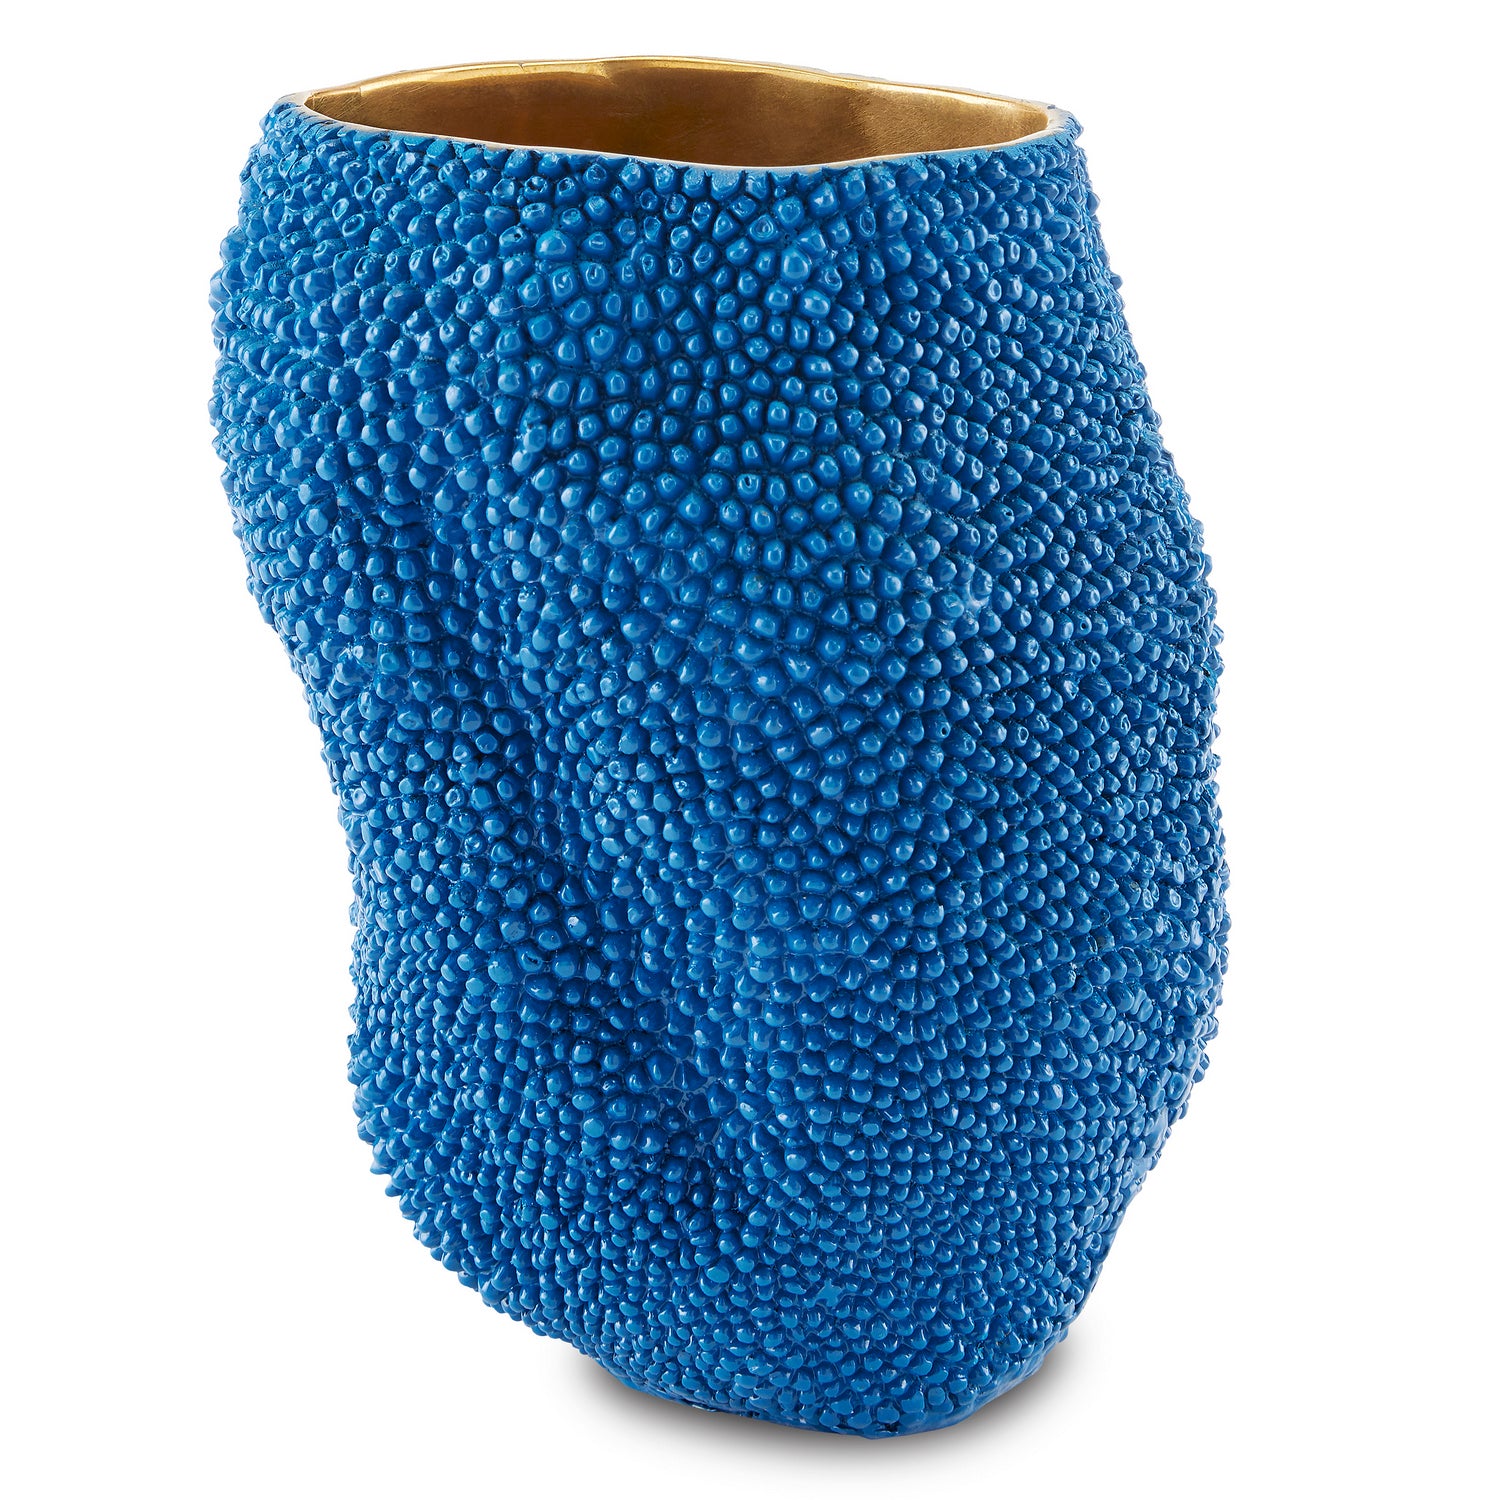 Currey and Company - Vase - Jackfruit - Blue/Gold- Union Lighting Luminaires Decor